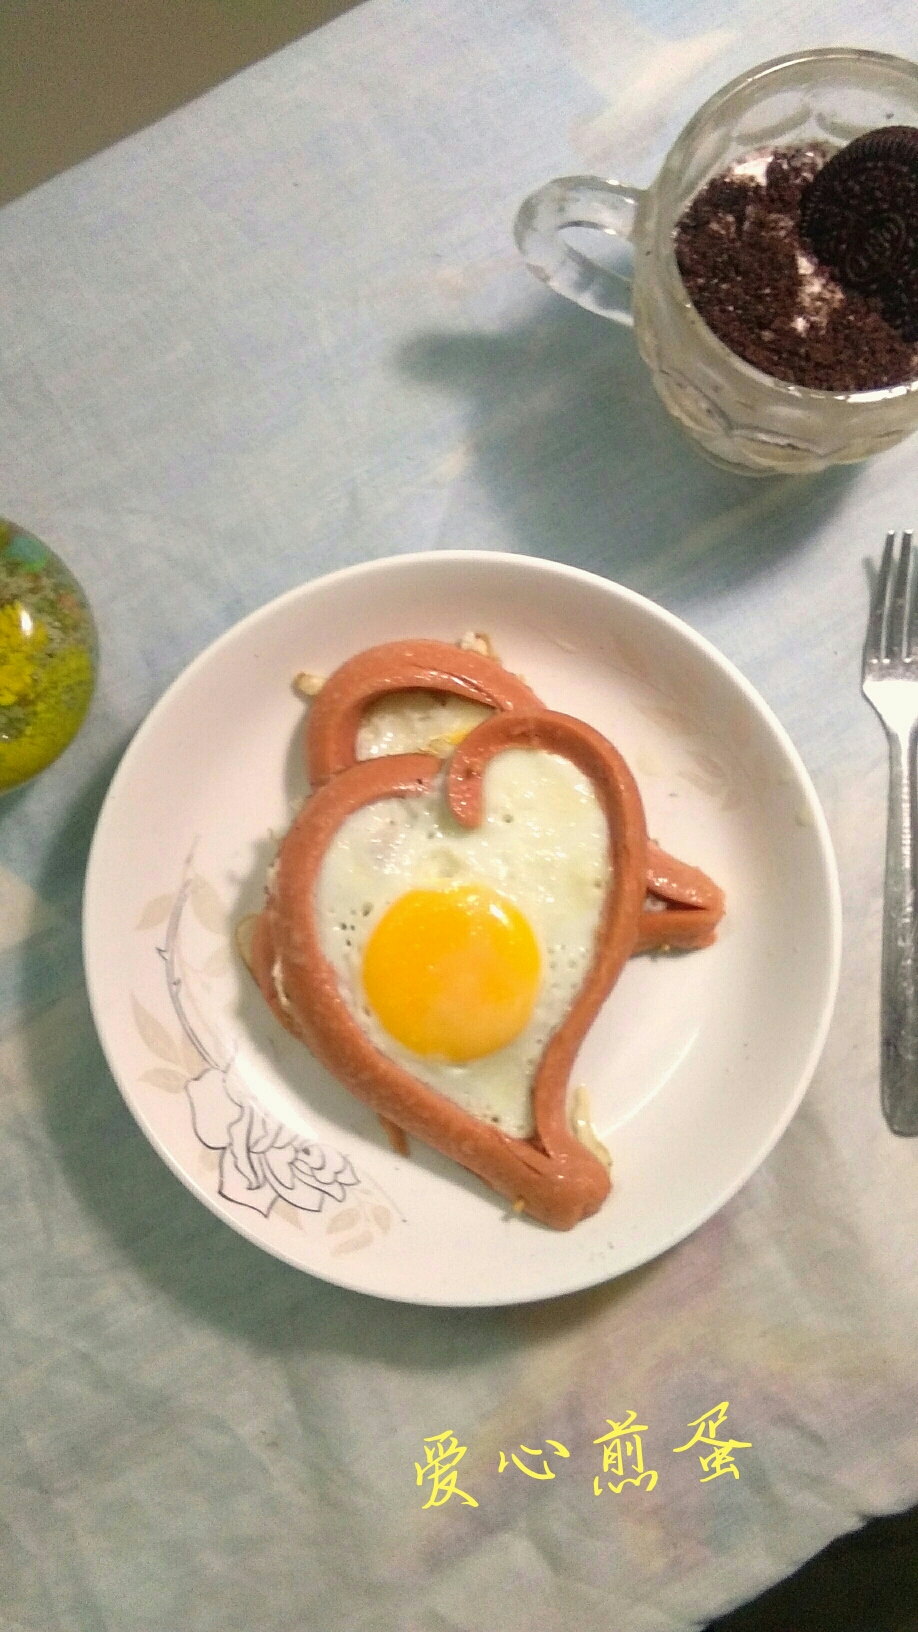 热恋中的早餐――爱心煎蛋